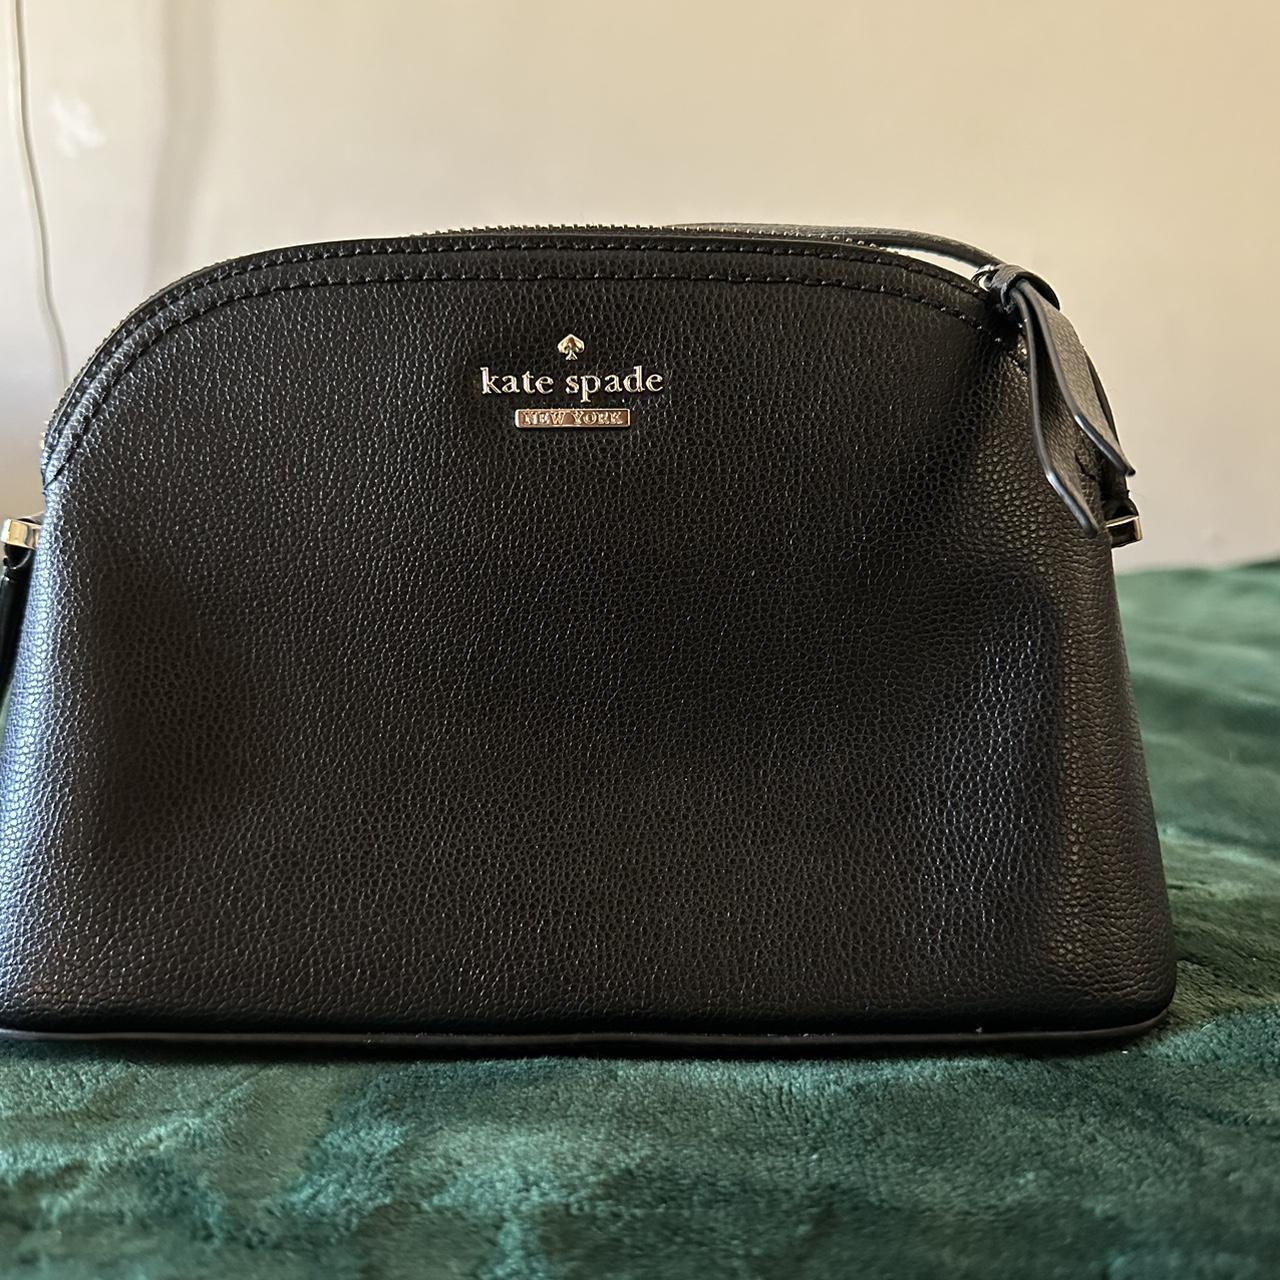 kate spade new york SMALL SHOULDER BAG - Handbag - black - Zalando.ie